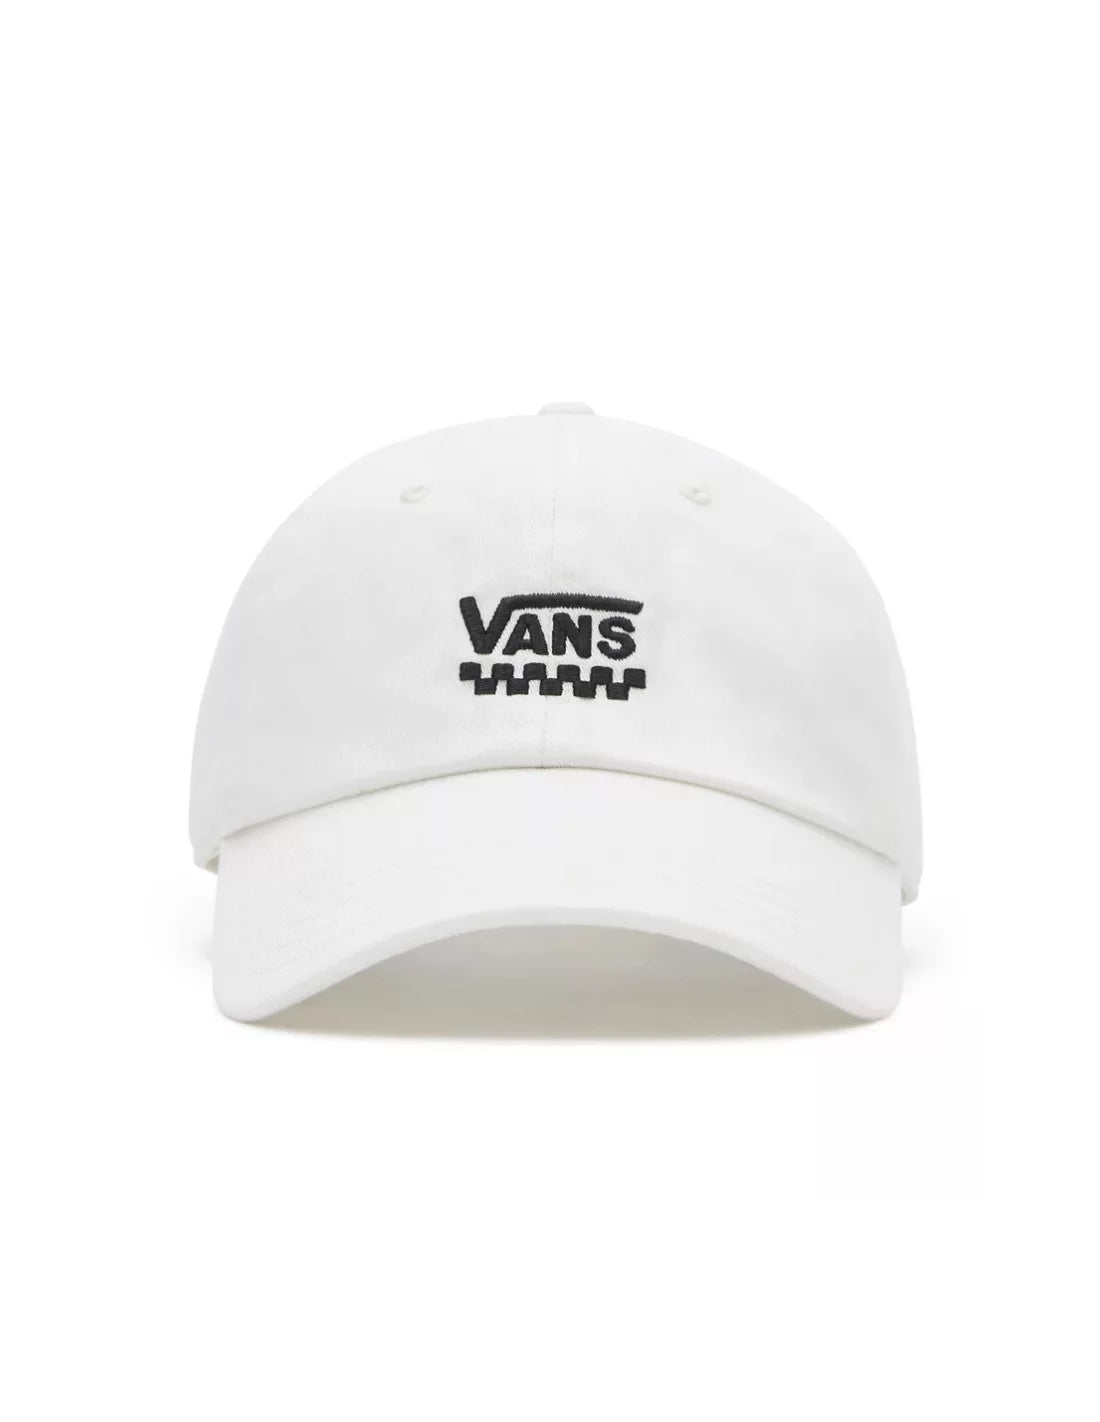 Vans WM Court Side Hat